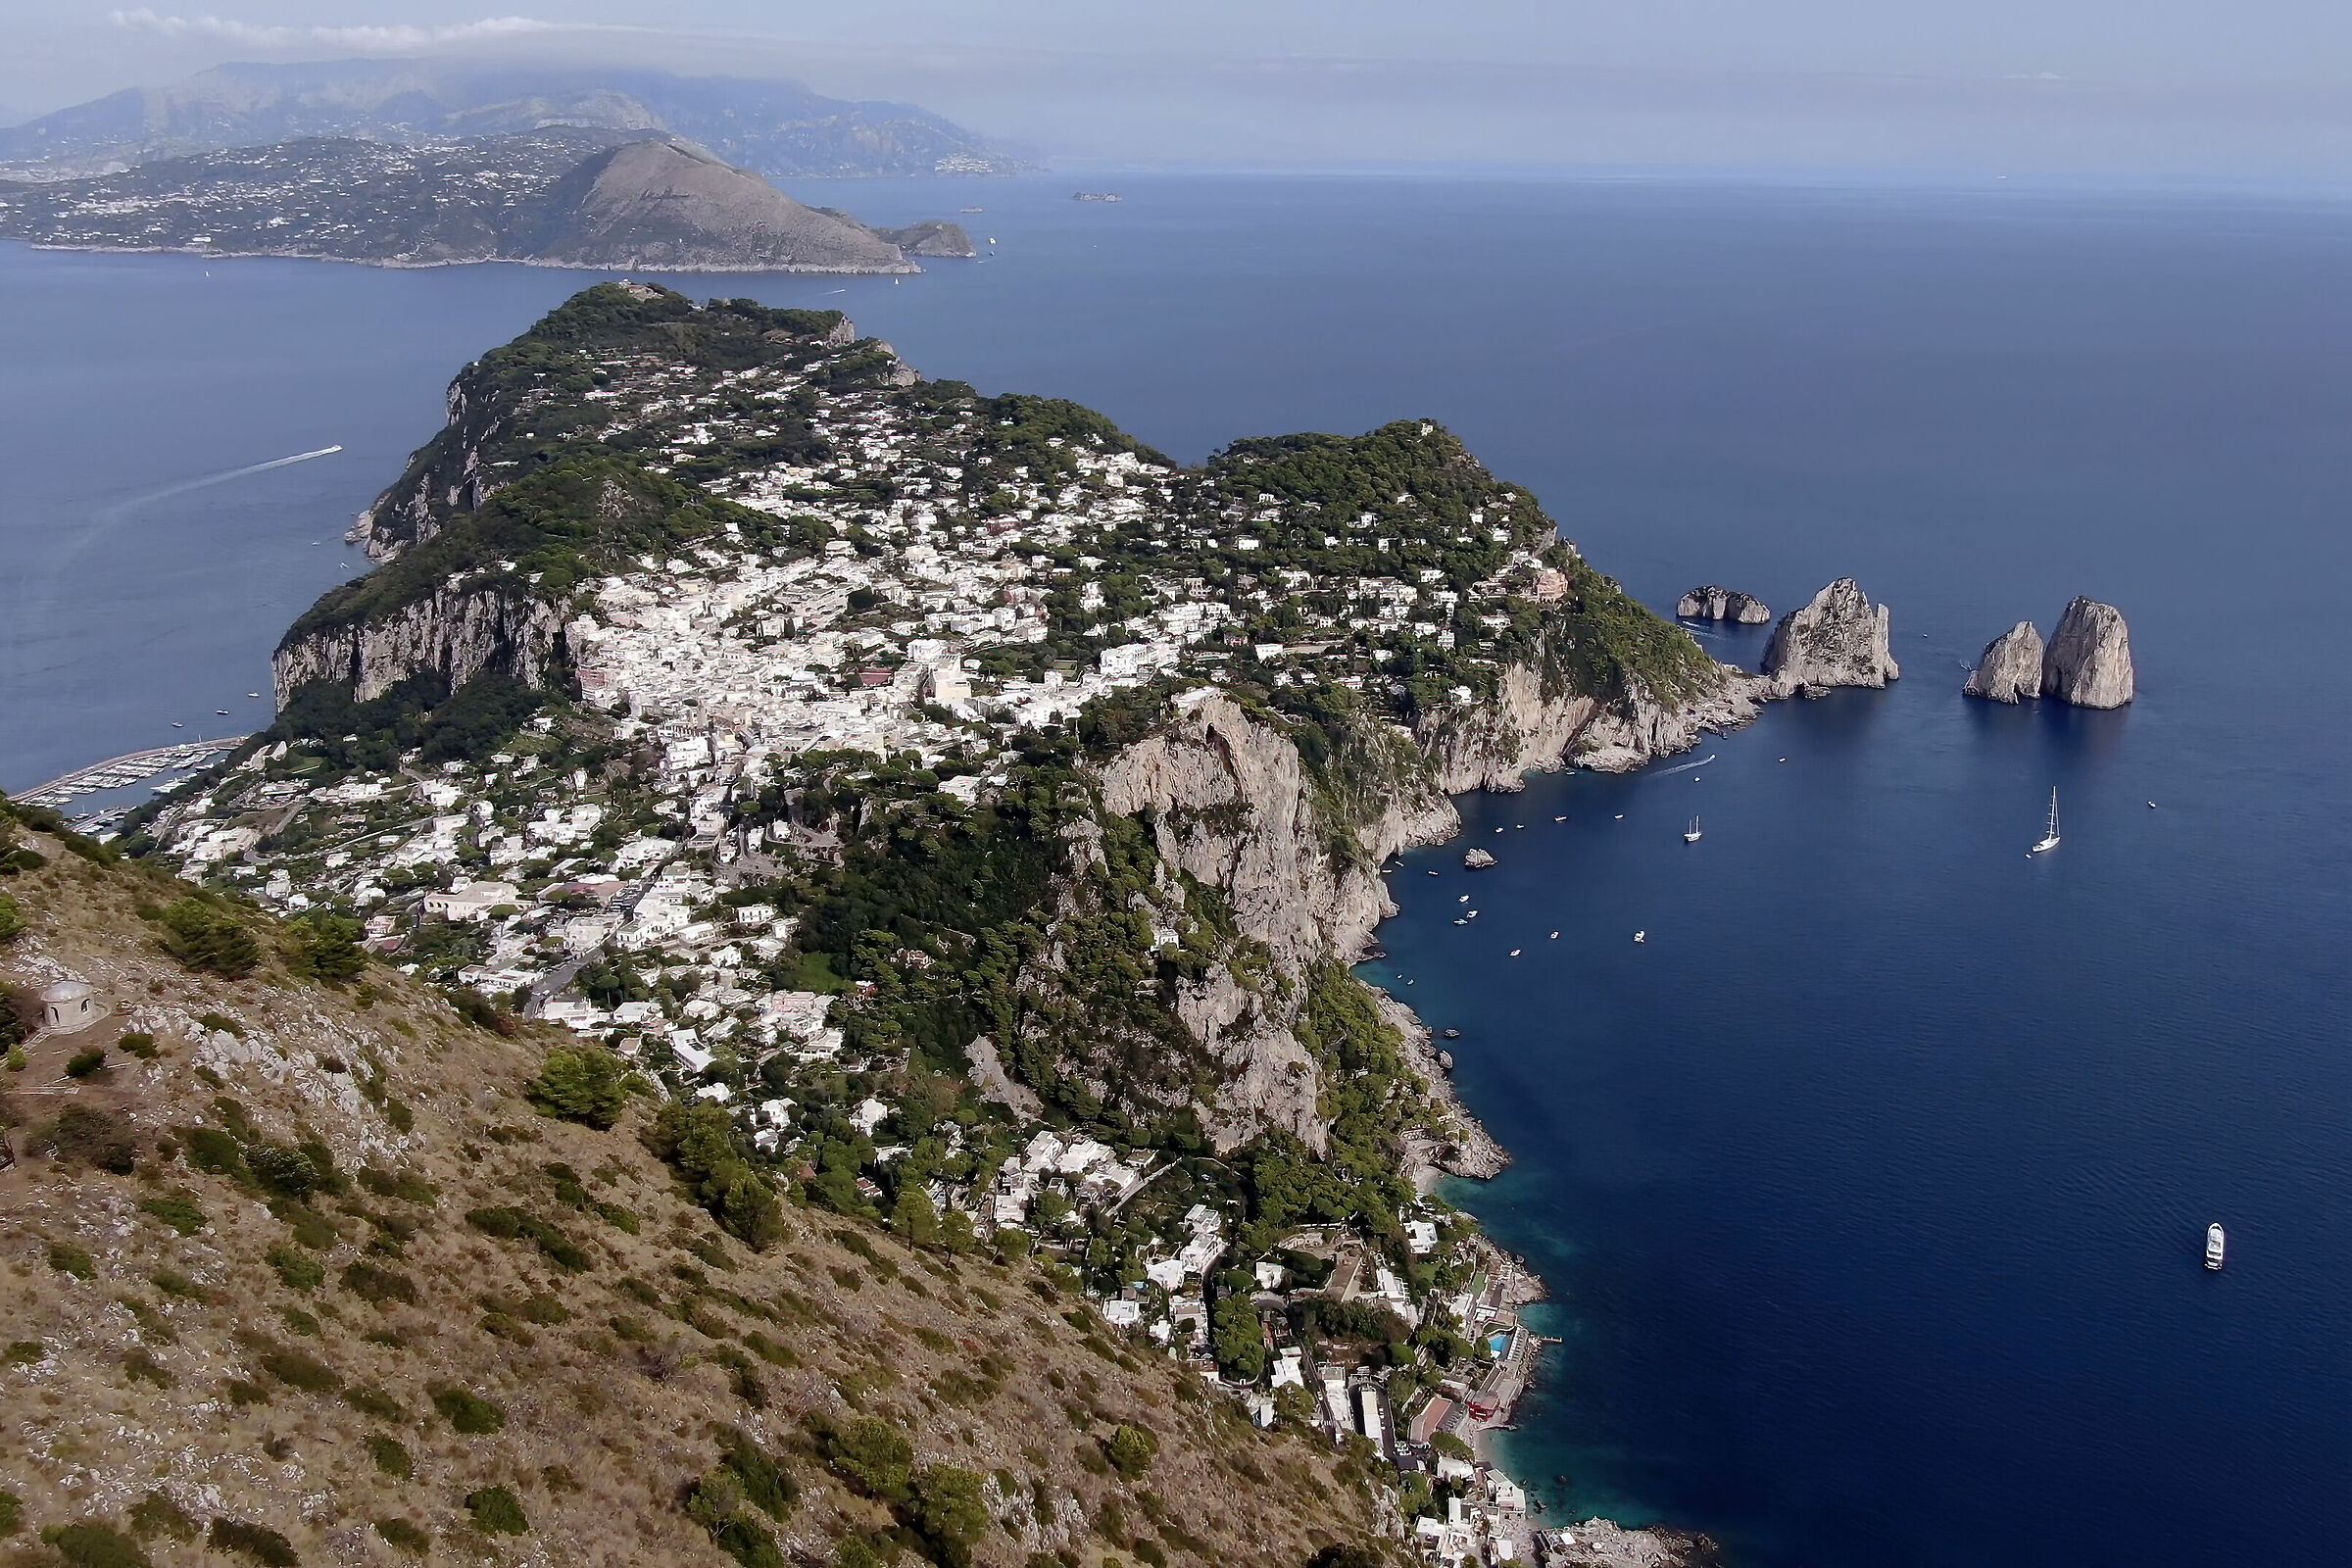 View of Capri from Mount Solaro...